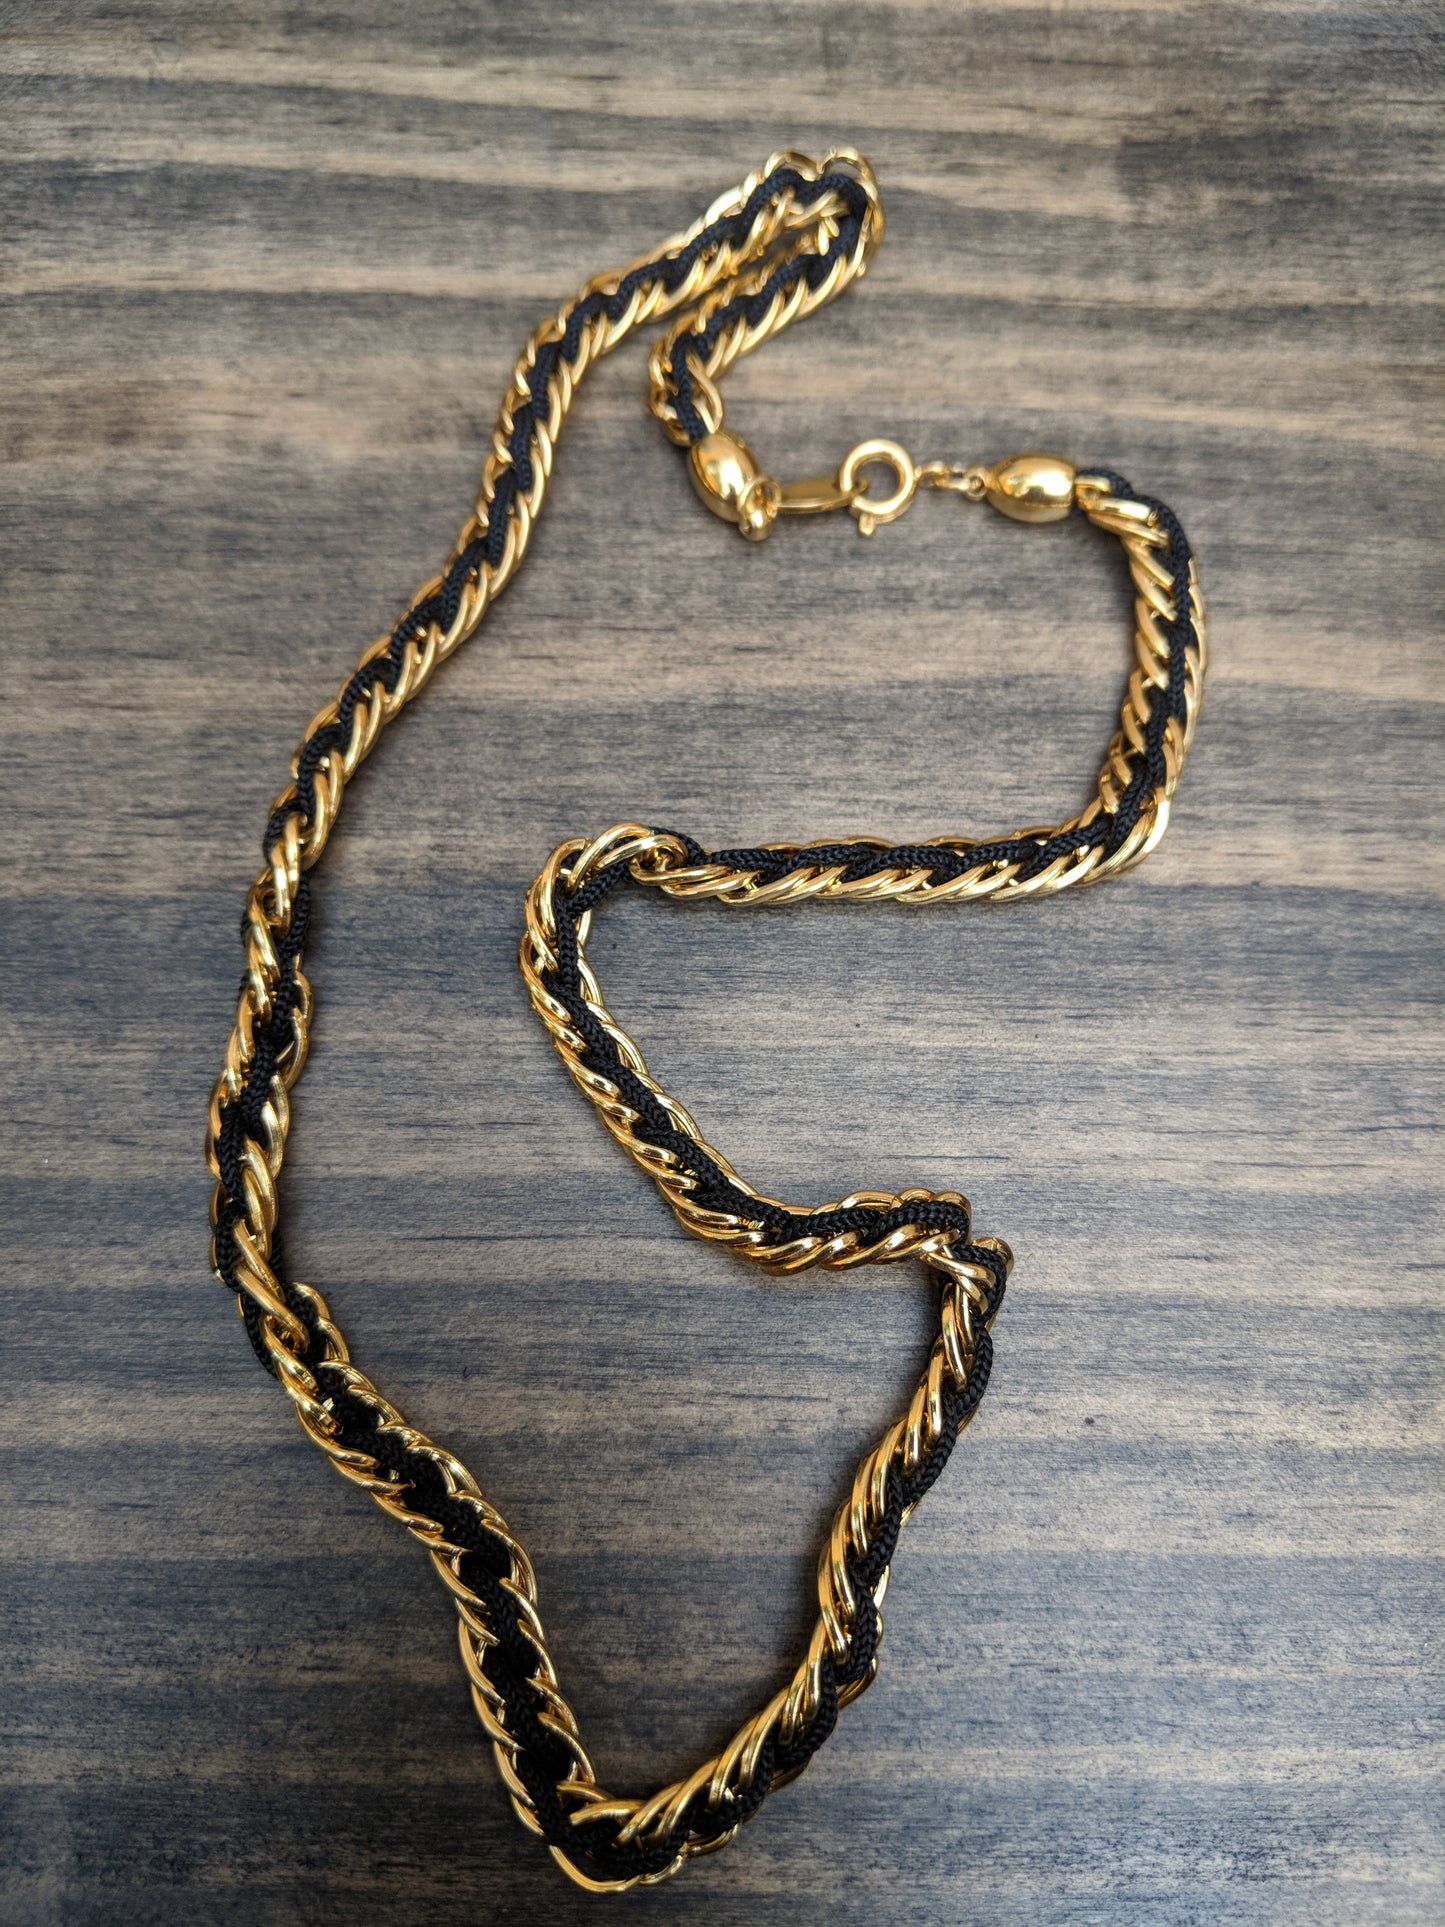 Vintage 80s Trifari Necklace Gold Tone Chain w/ Black Cord